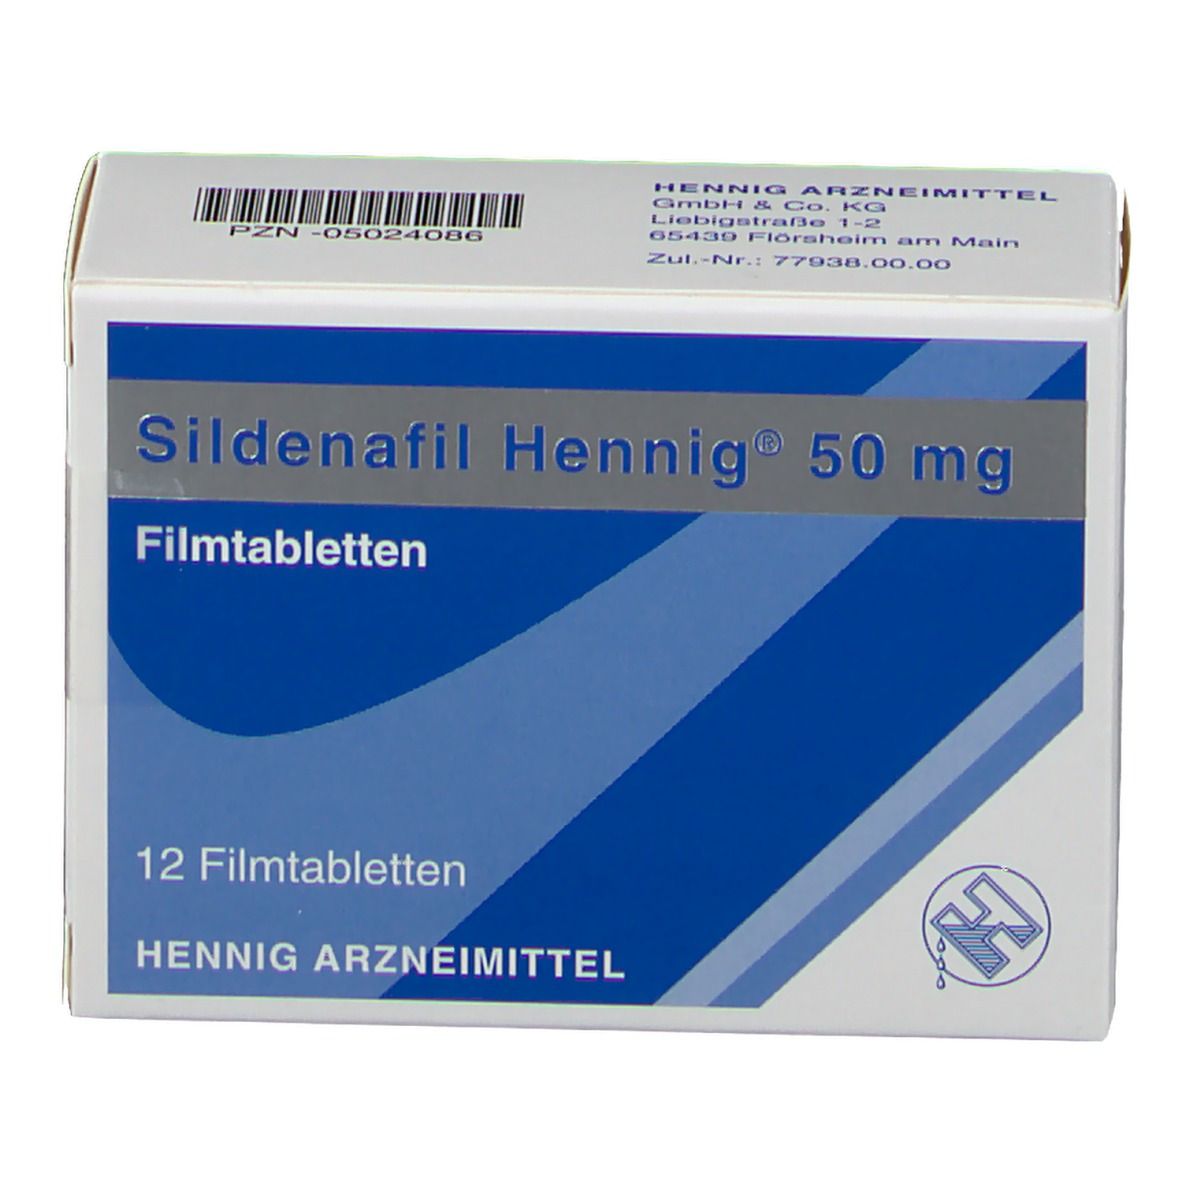 Sildenafil Hennig® 50 mg